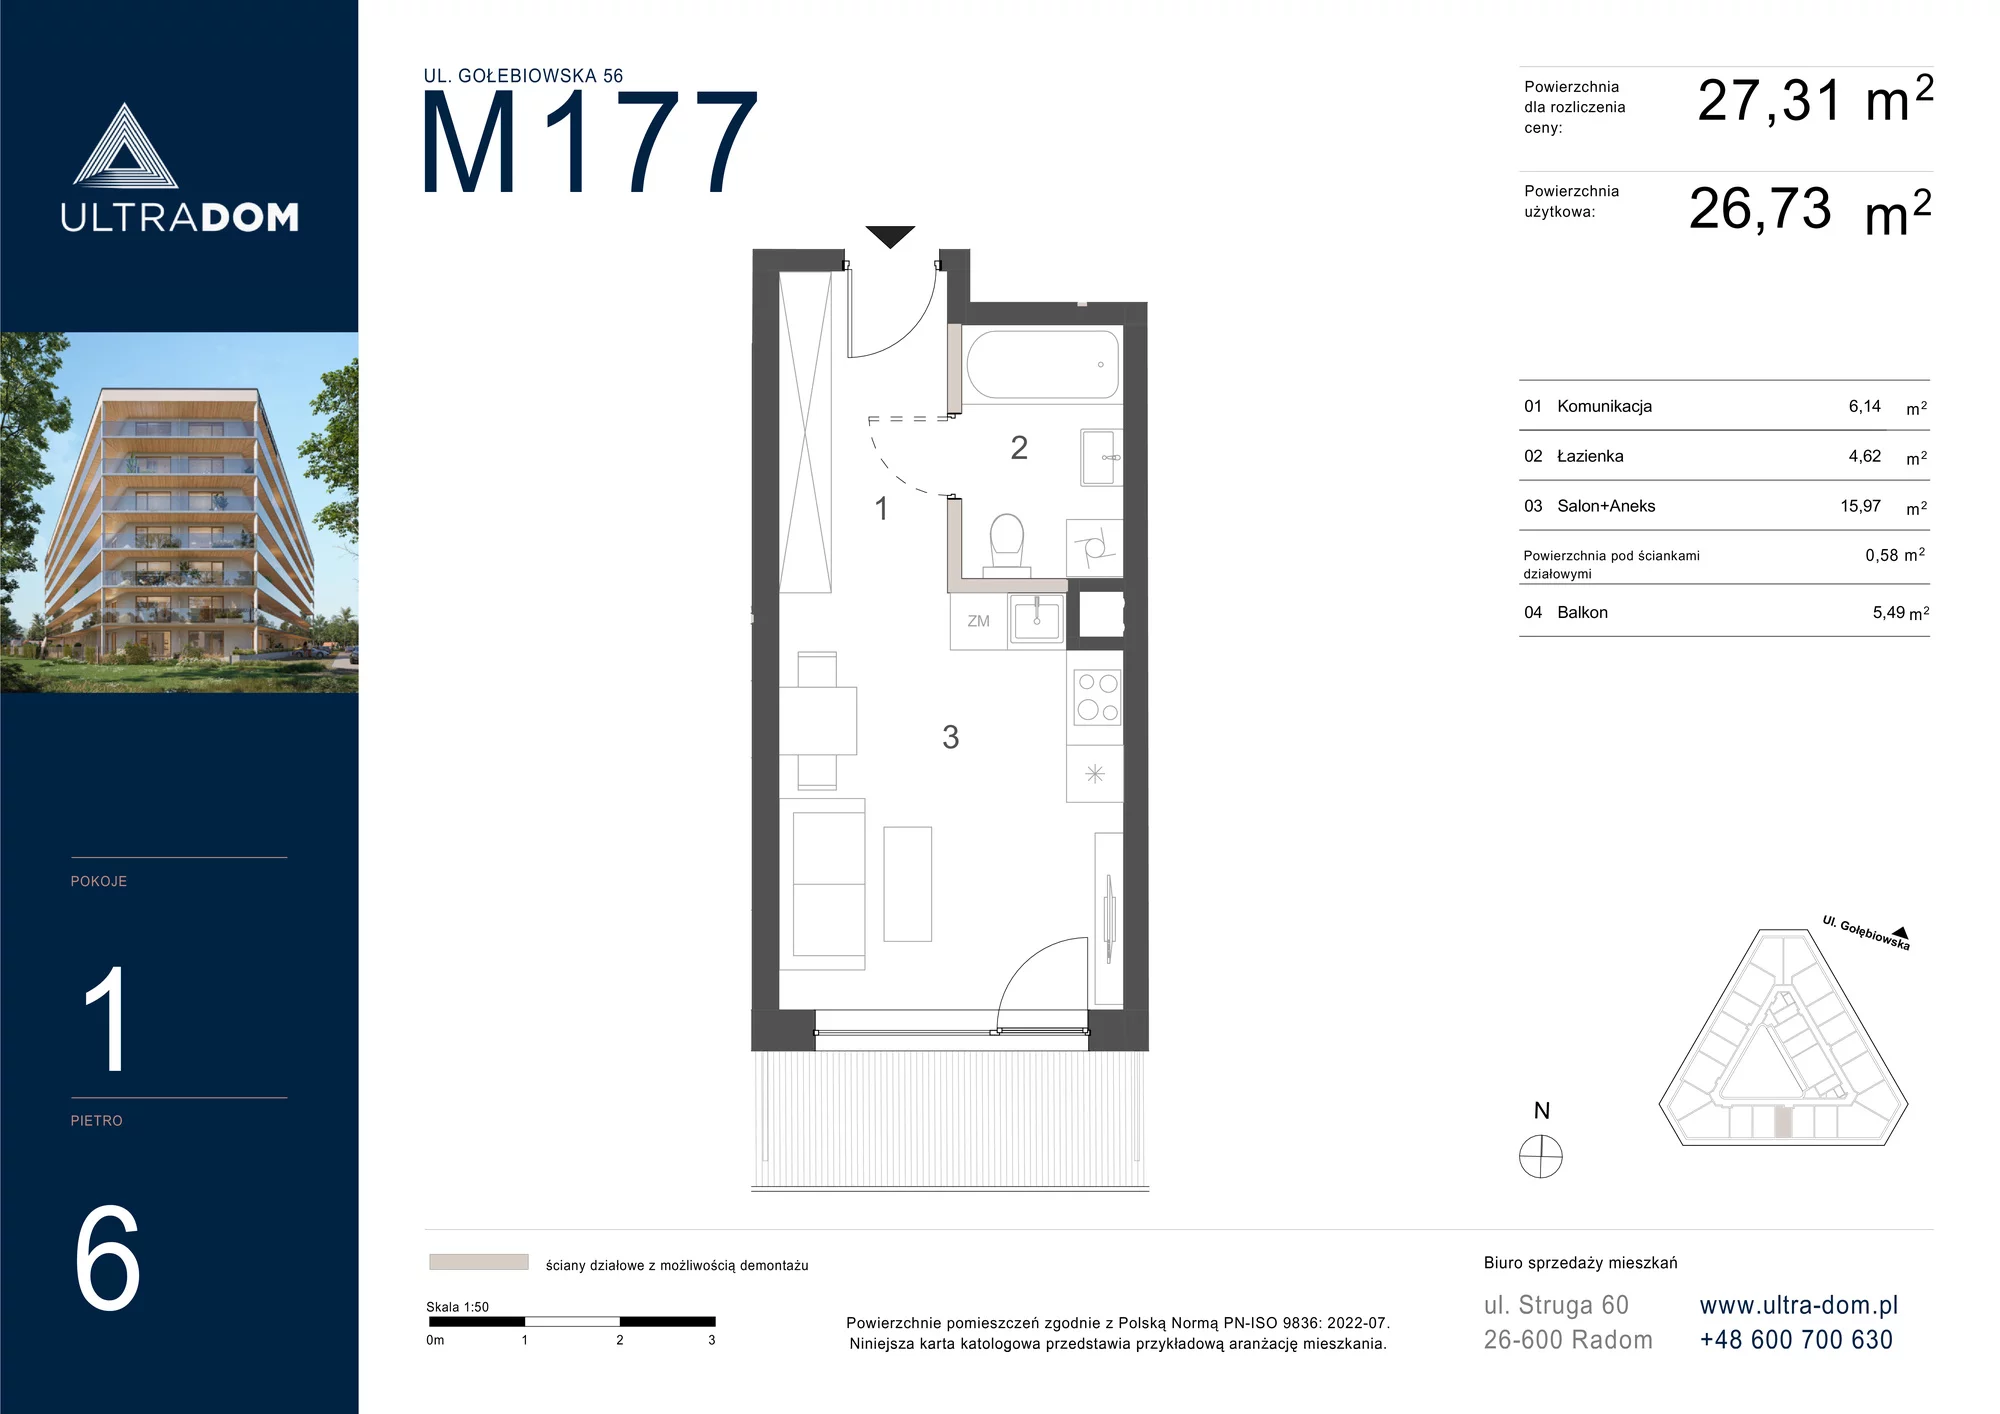 Mieszkanie 27,31 m², piętro 6, oferta nr M177, ULTRADOM, Radom, Gołębiów, ul. Gołębiowska